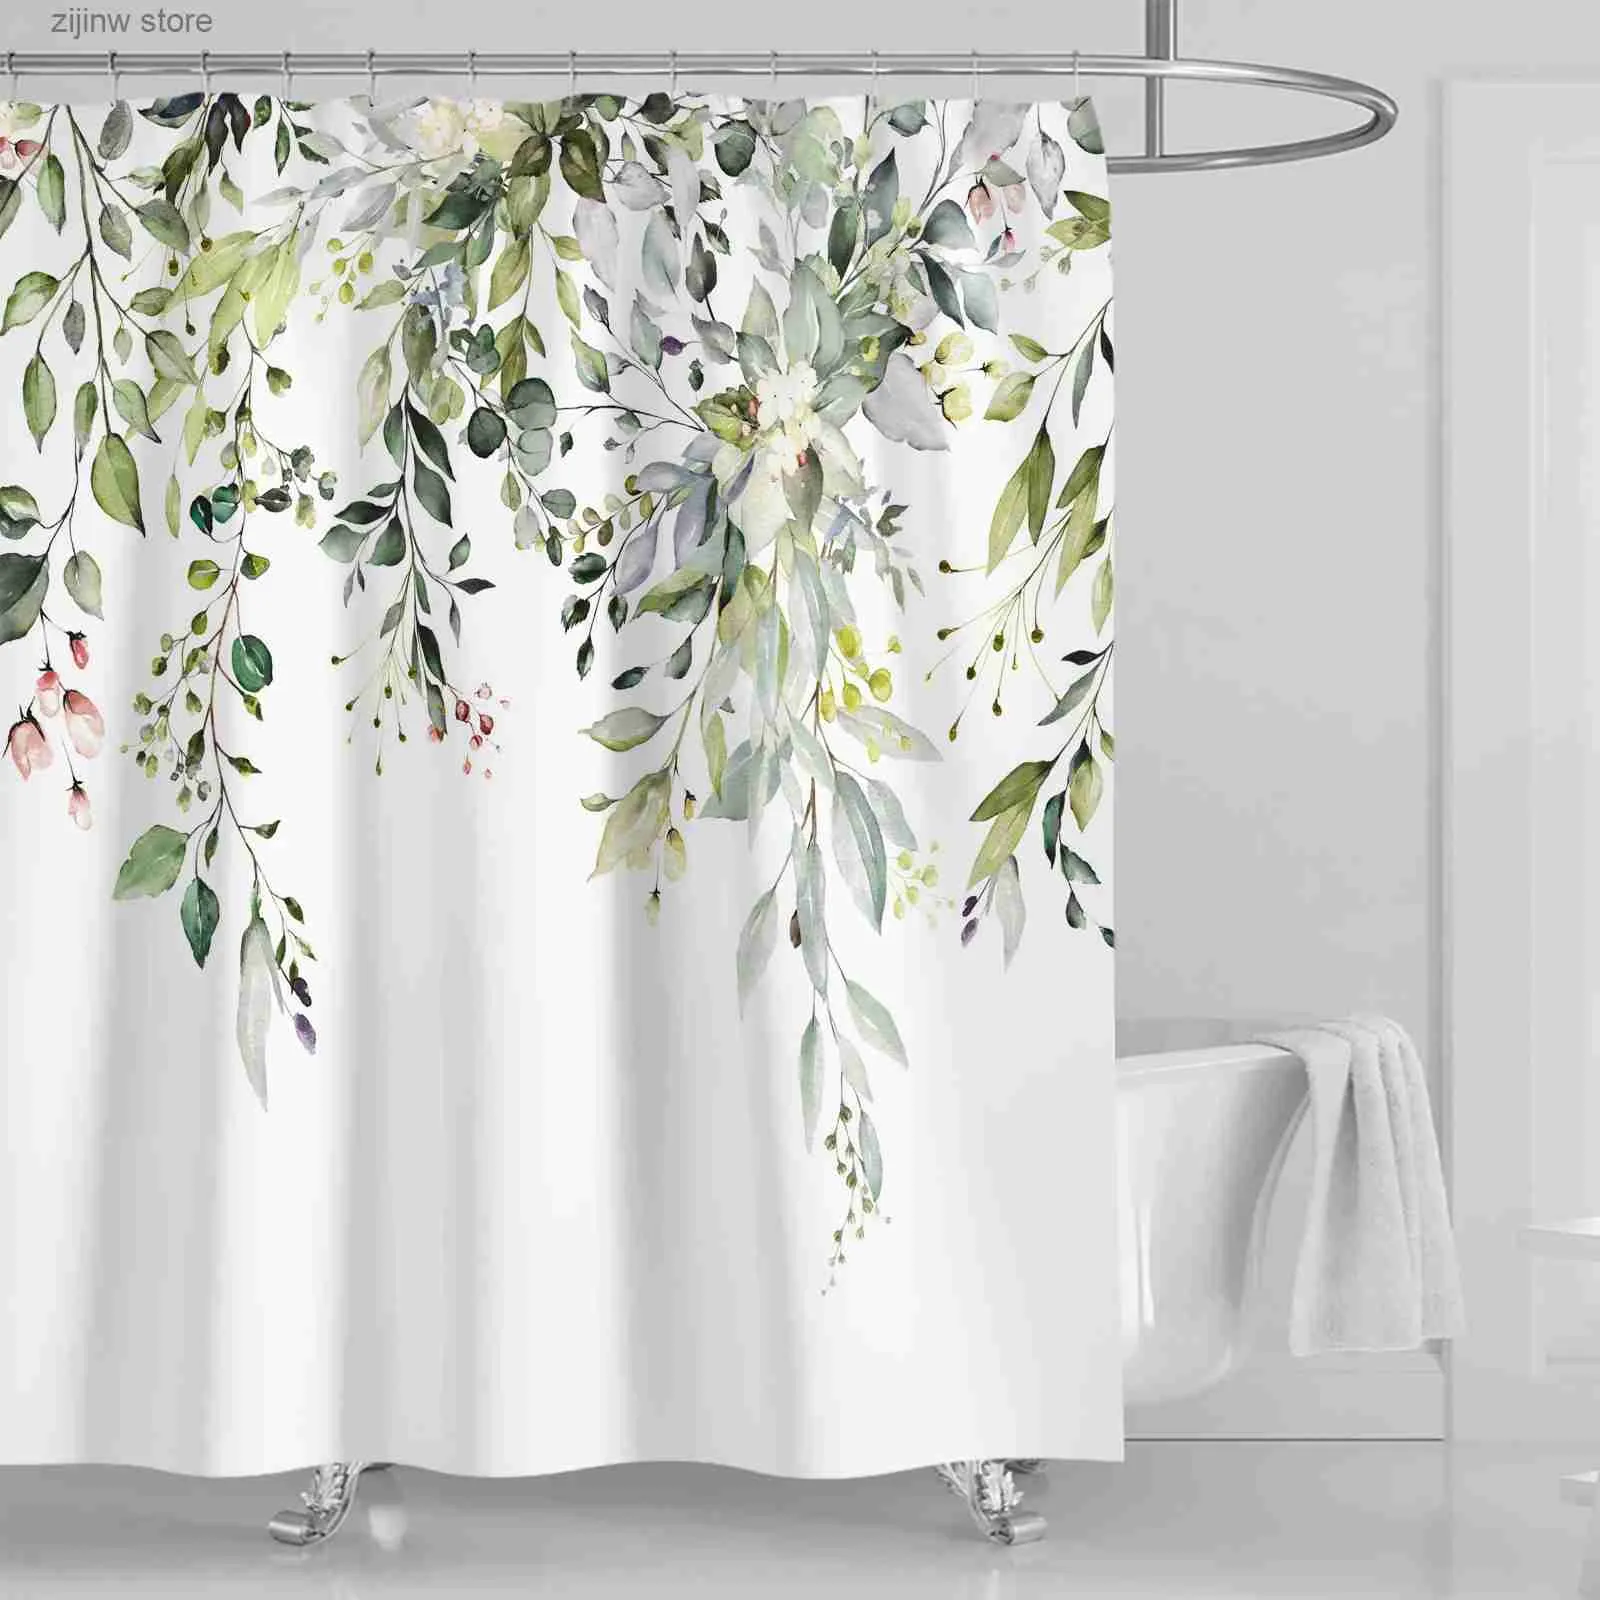 シャワーカーテン上部の水彩の葉の上部の植物の葉のシャワーカーテンと花の浴室の装飾180 * 180cmフックY240316